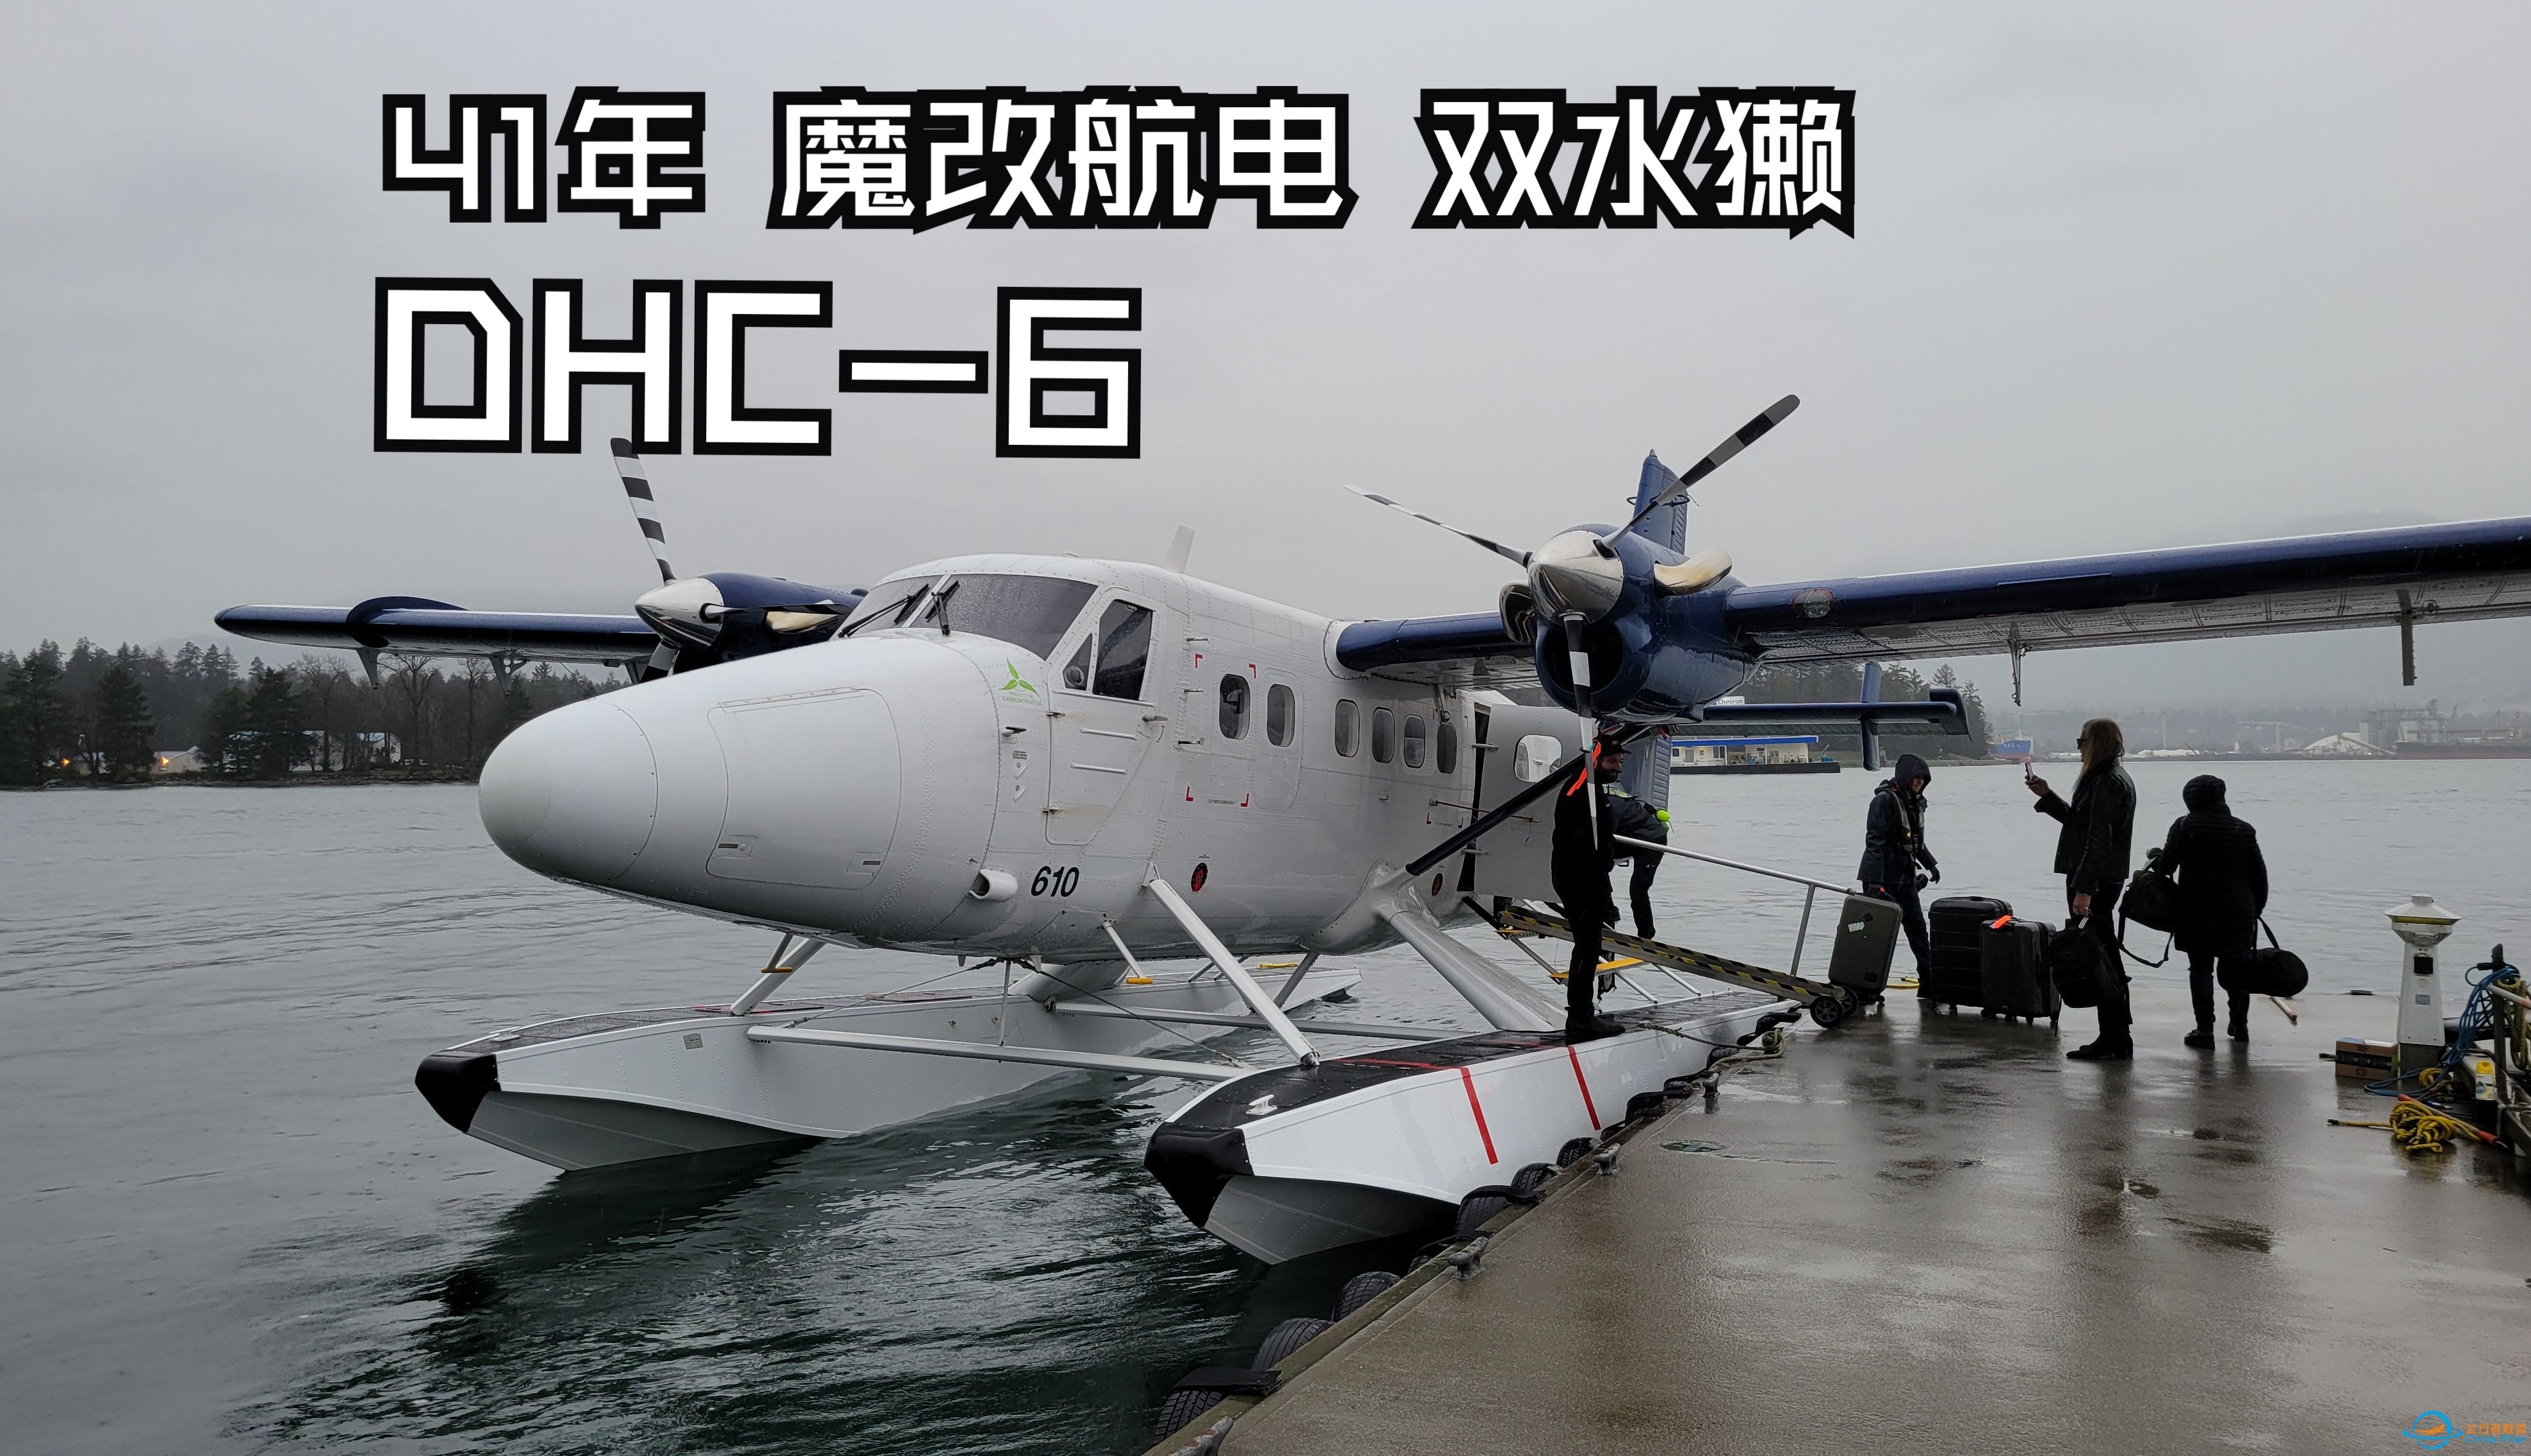 【飞行游记】41年的魔改老飞机？海港航空DHC-6双水獭水上飞机飞行体验-2893 